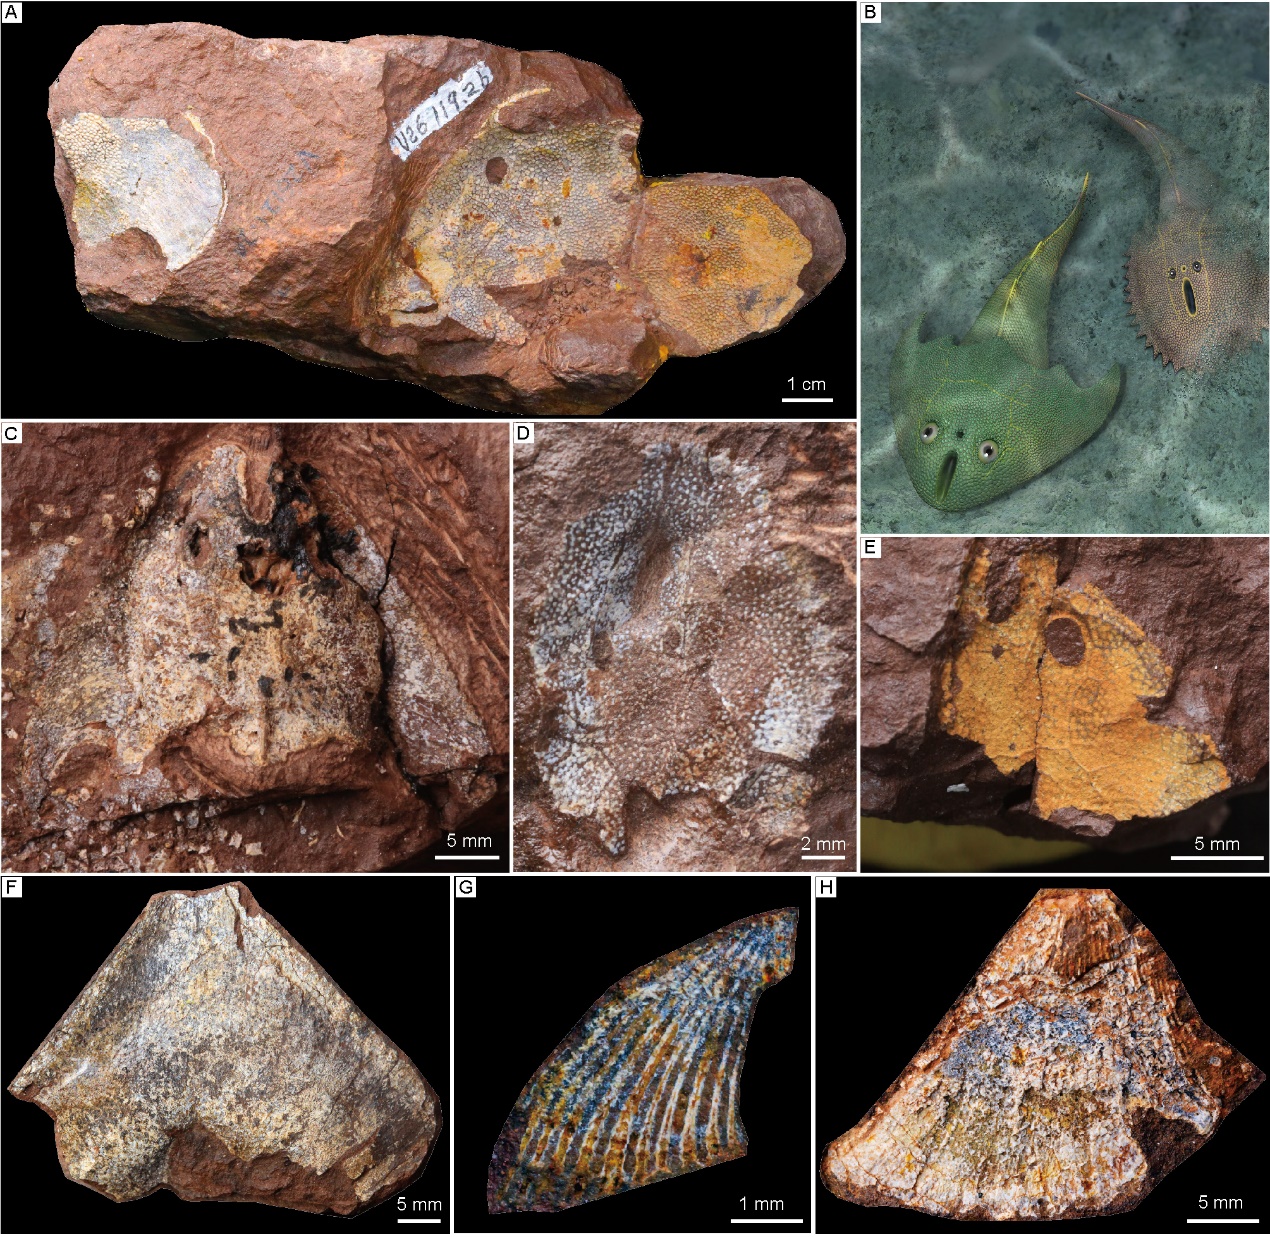 “从鱼到人”演化过程长达5亿年左右 化石揭秘人类演化史 - 西部网（陕西新闻网）